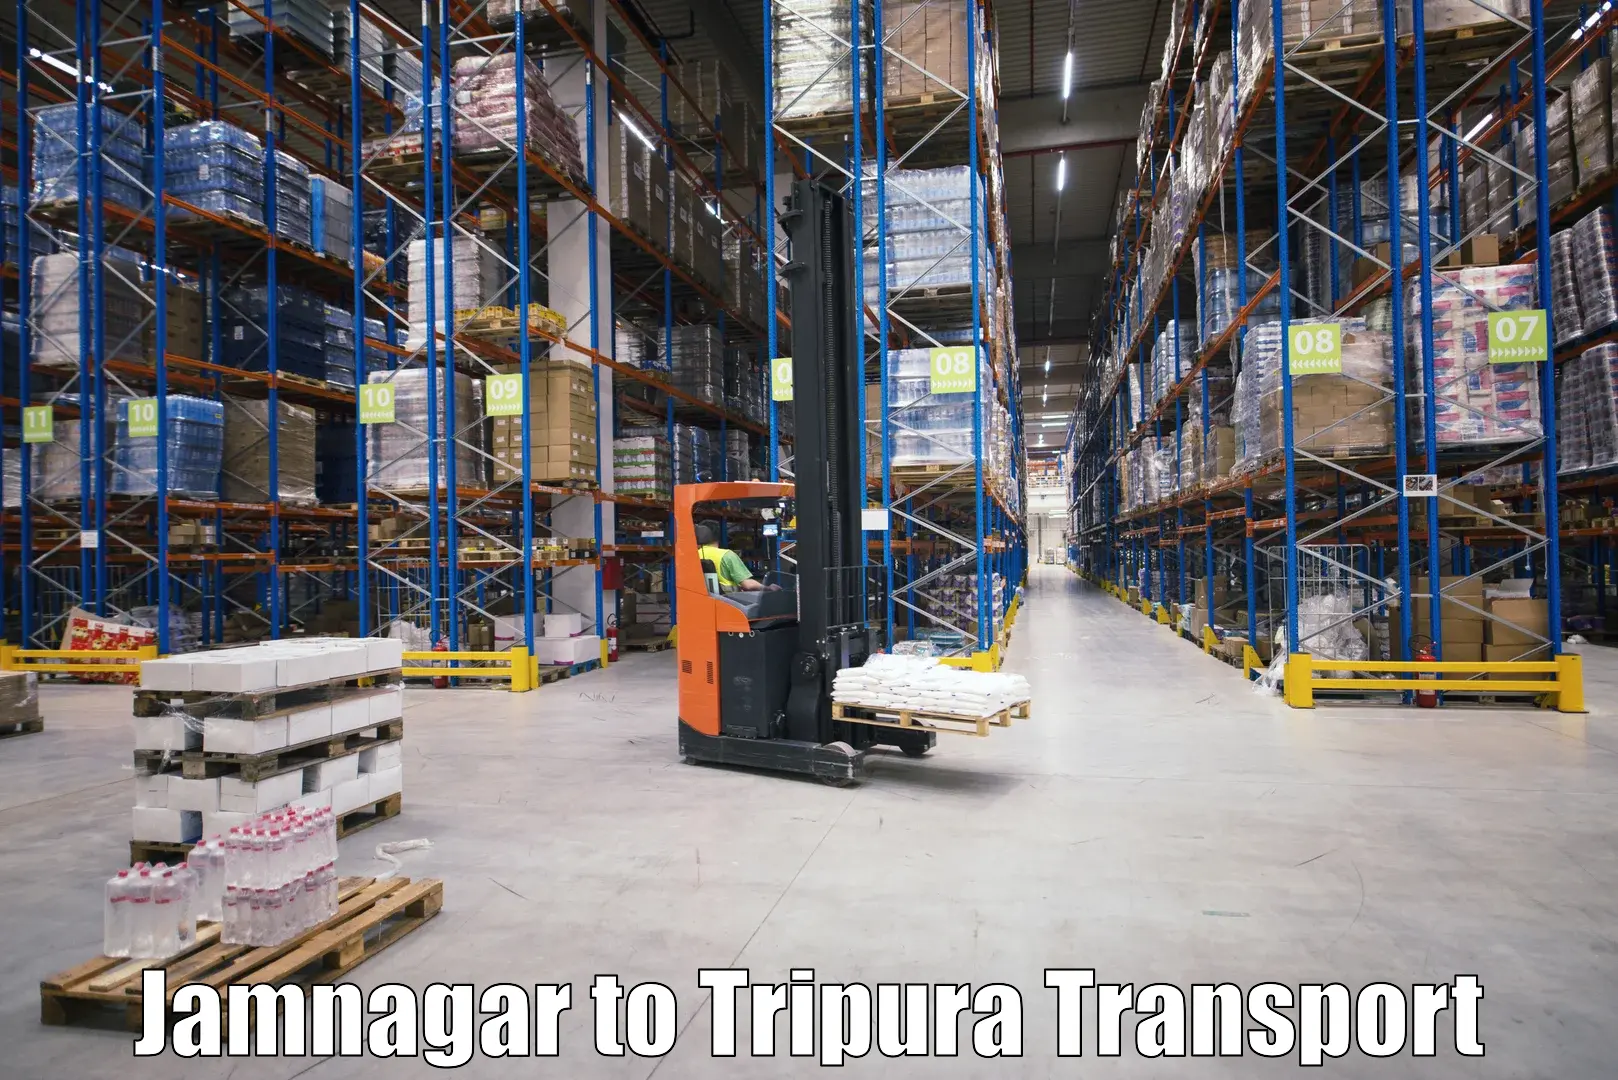 Delivery service Jamnagar to Kailashahar